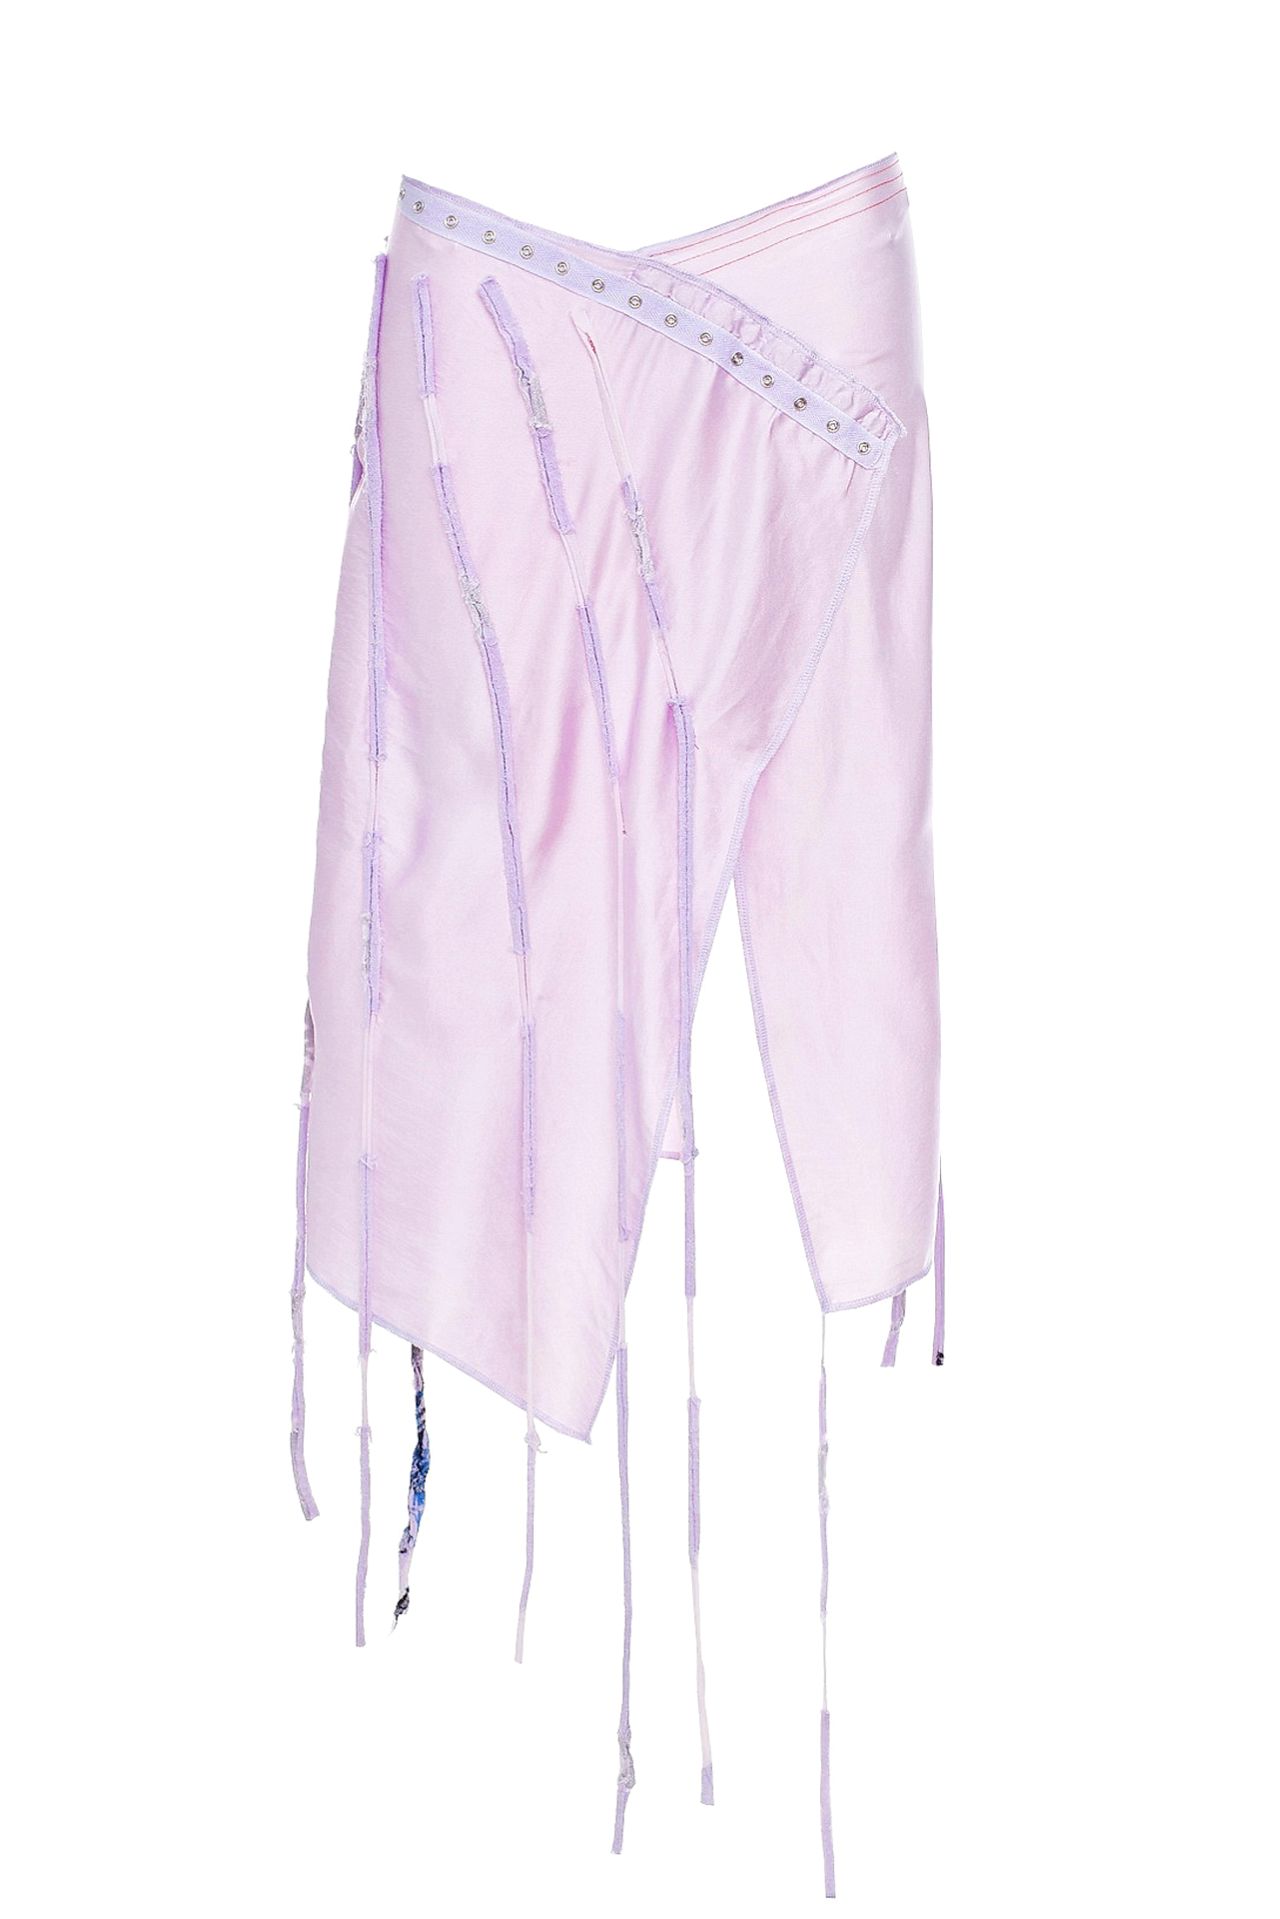 Одежда женская Юбка VIRA LATA (71353/00). Купить за 6200 руб.